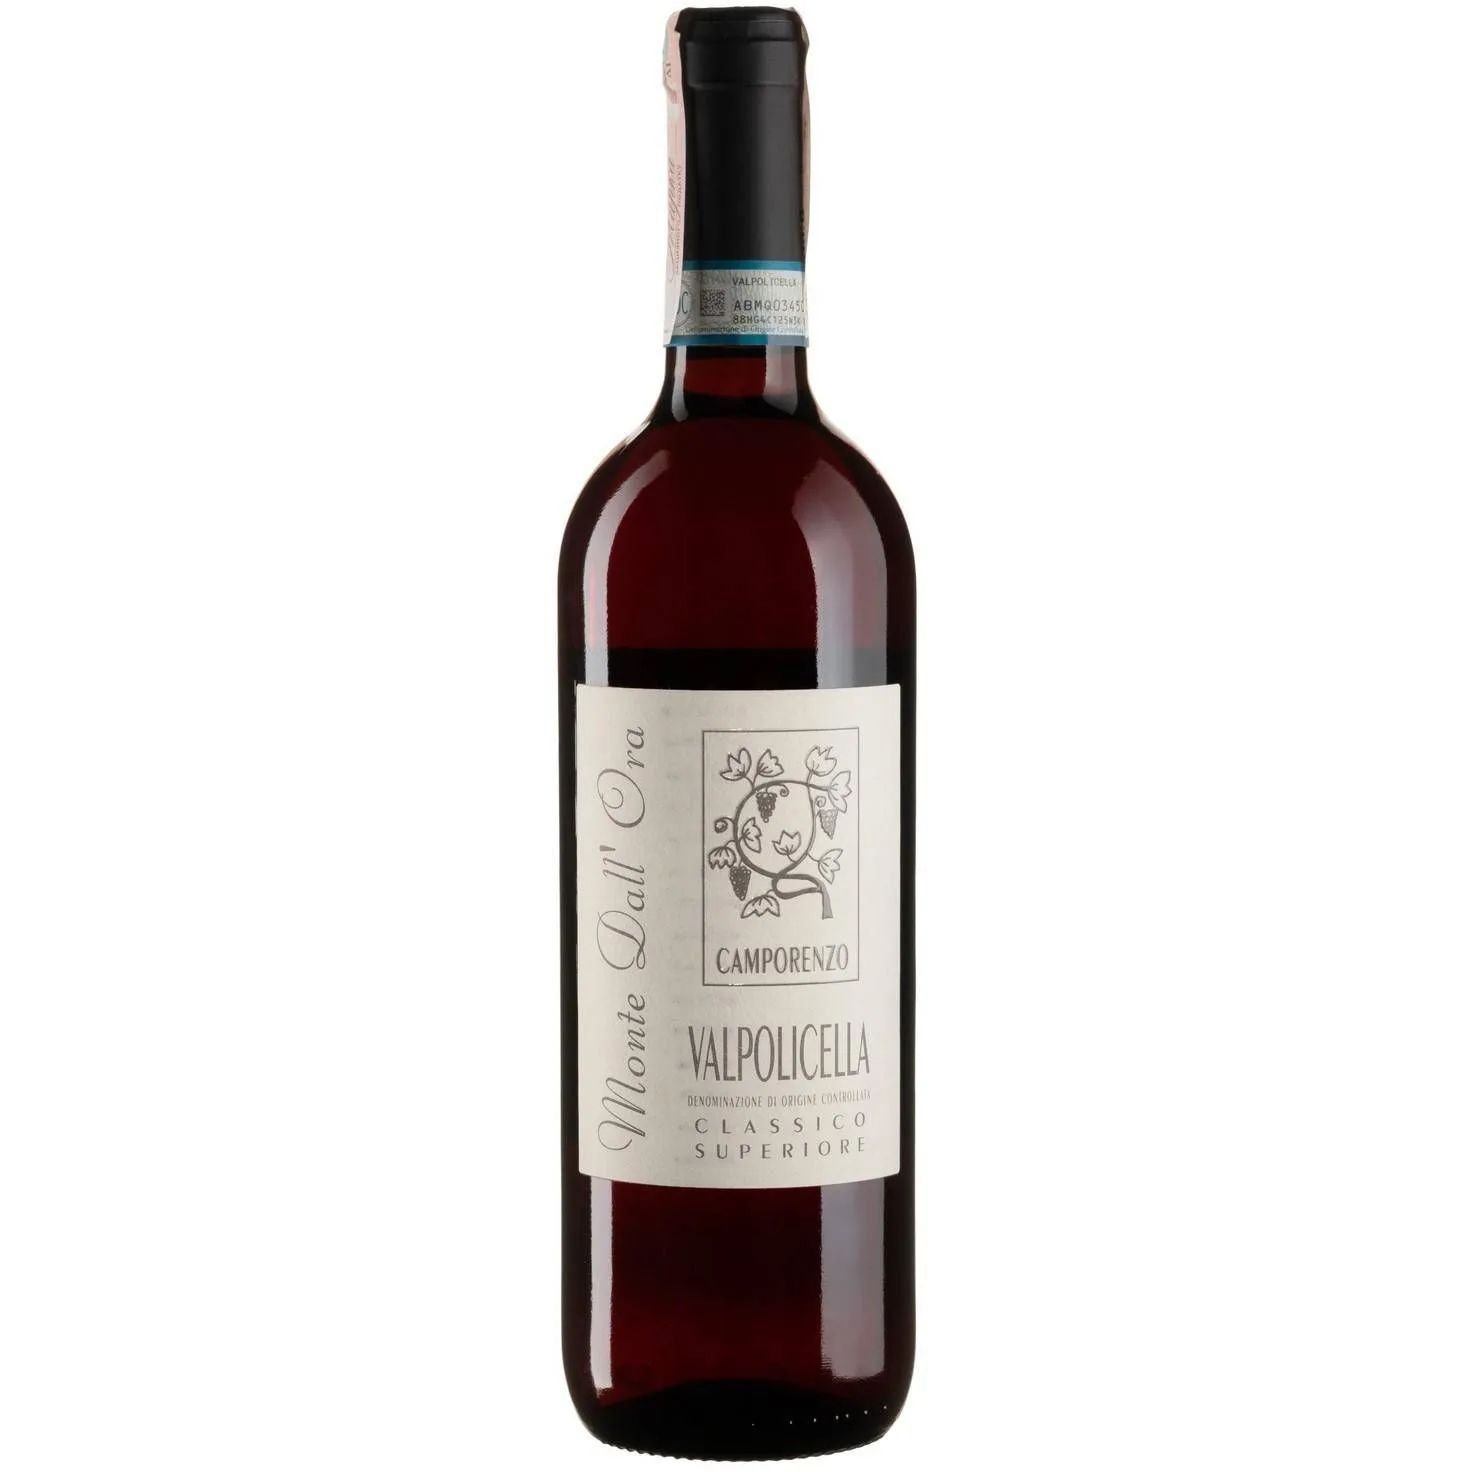 Вино Monte Dall'Ora Valpolicella Classico Superiore Camporenzo 2019 красное сухое 0.75 л - фото 1